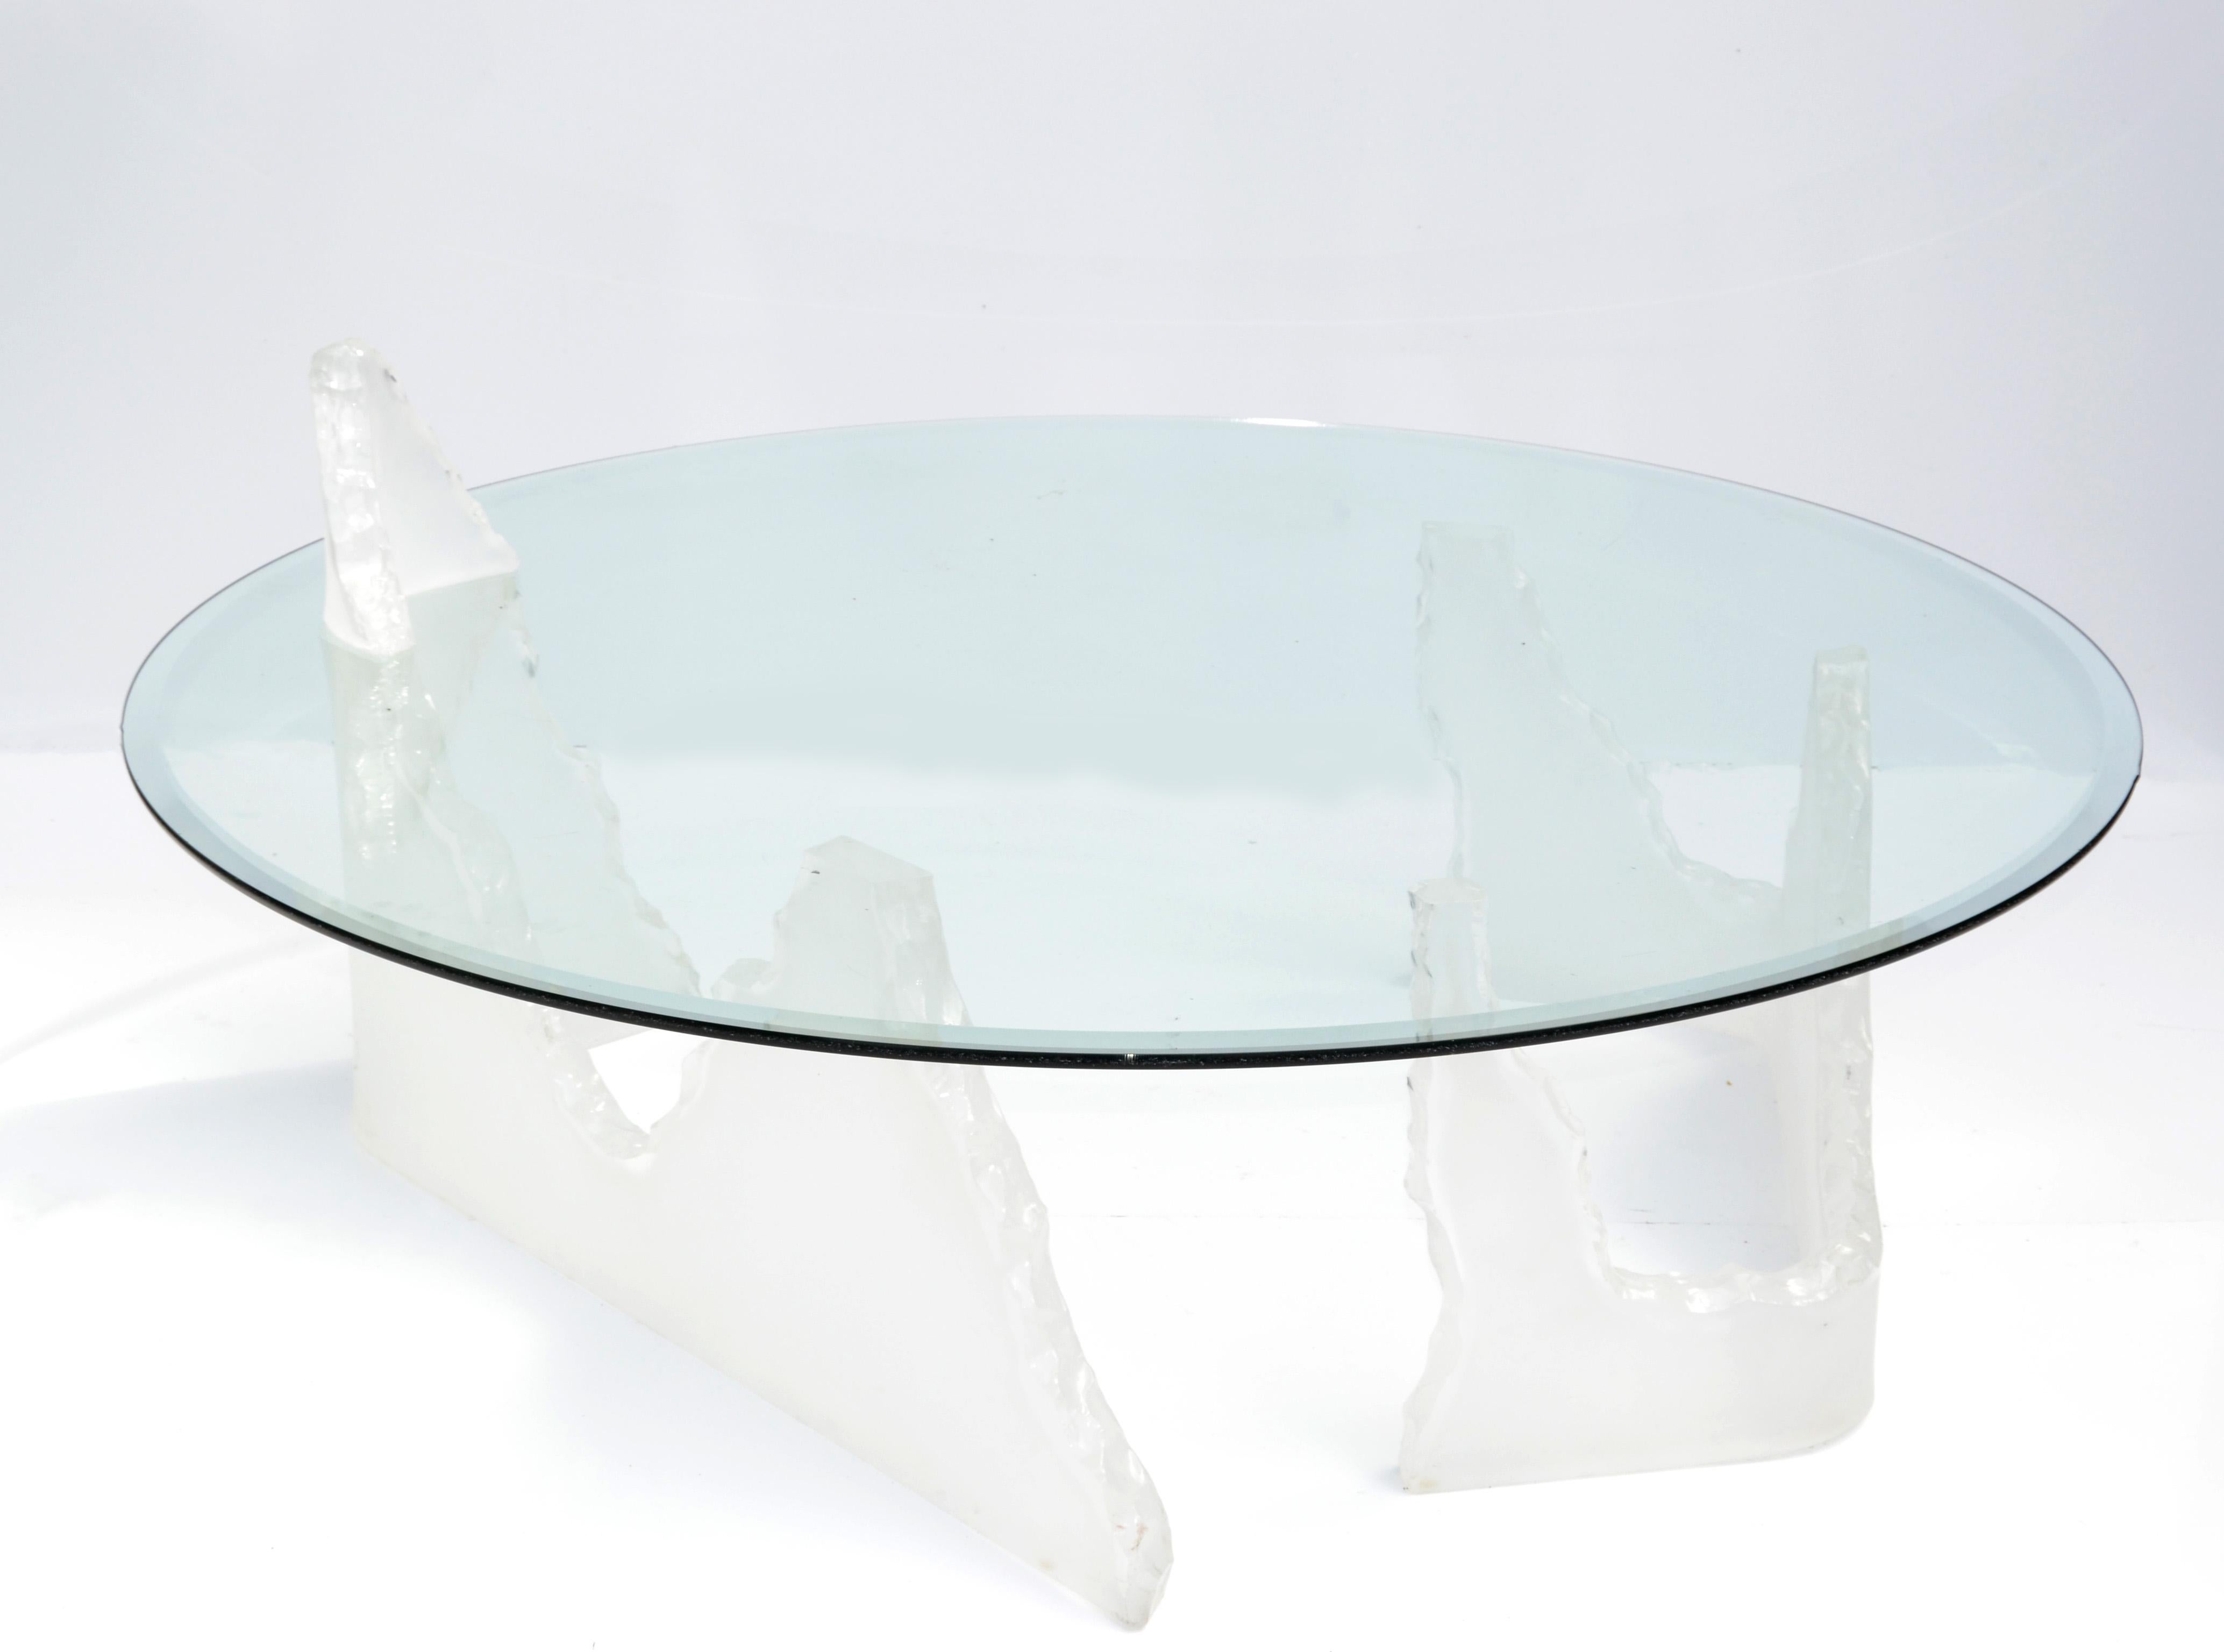 Dans le style de Lion in Frost, cette impressionnante table basse ou table de cocktail ronde en forme d'iceberg.
Comprend deux bases en Lucite au look iceberg avec une pointe au sommet, complétées par un plateau rond en verre biseauté. 
Un design